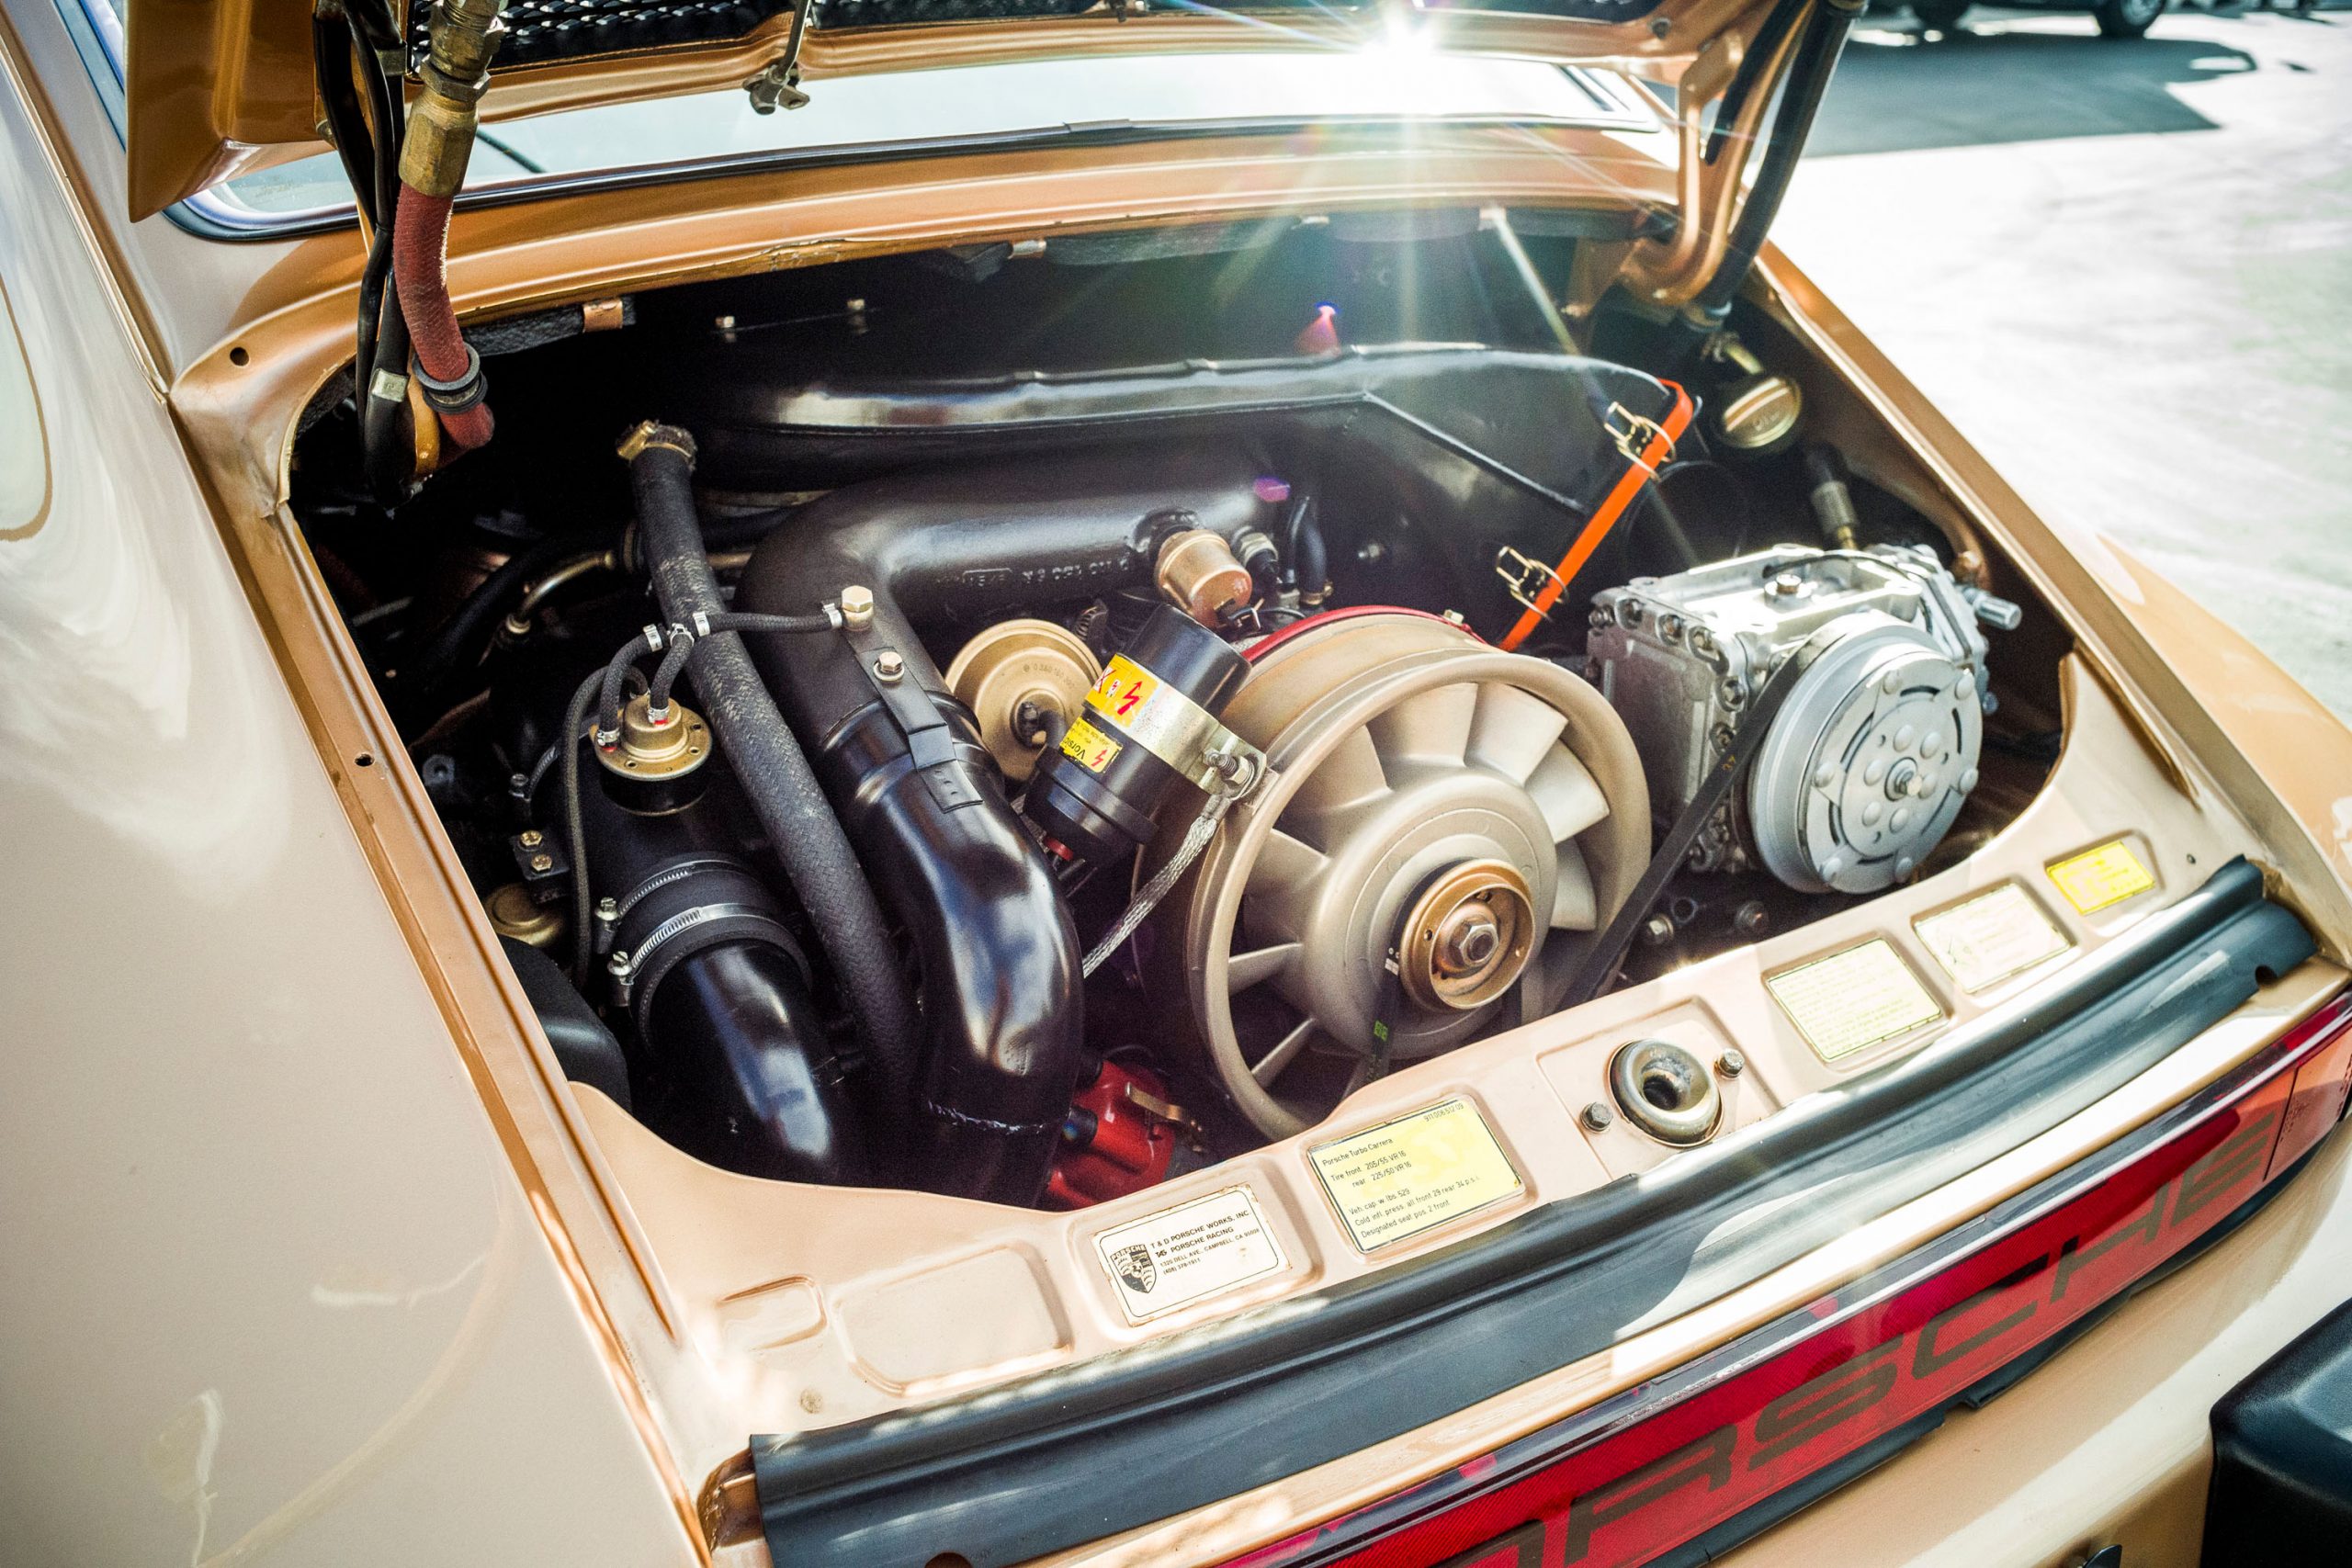 1977 Porsche 911 Turbo engine